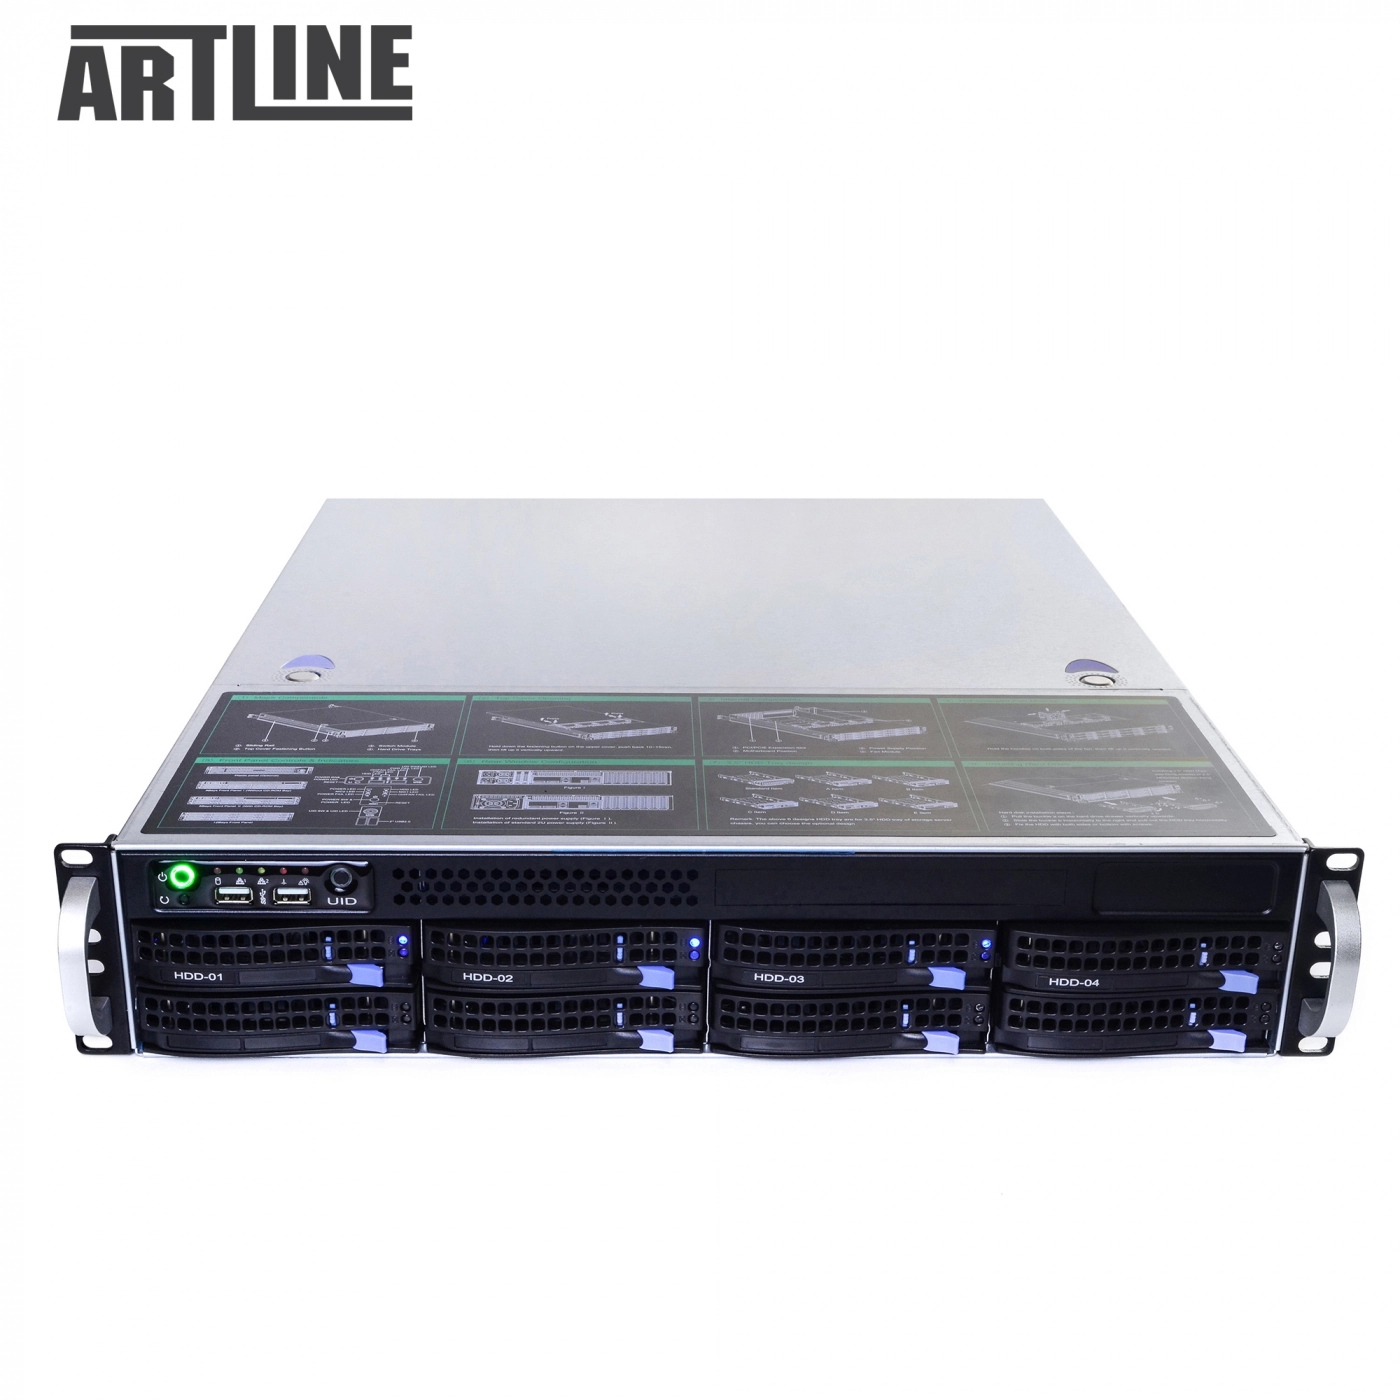 Купить Сервер ARTLINE Business R35v03 - фото 10